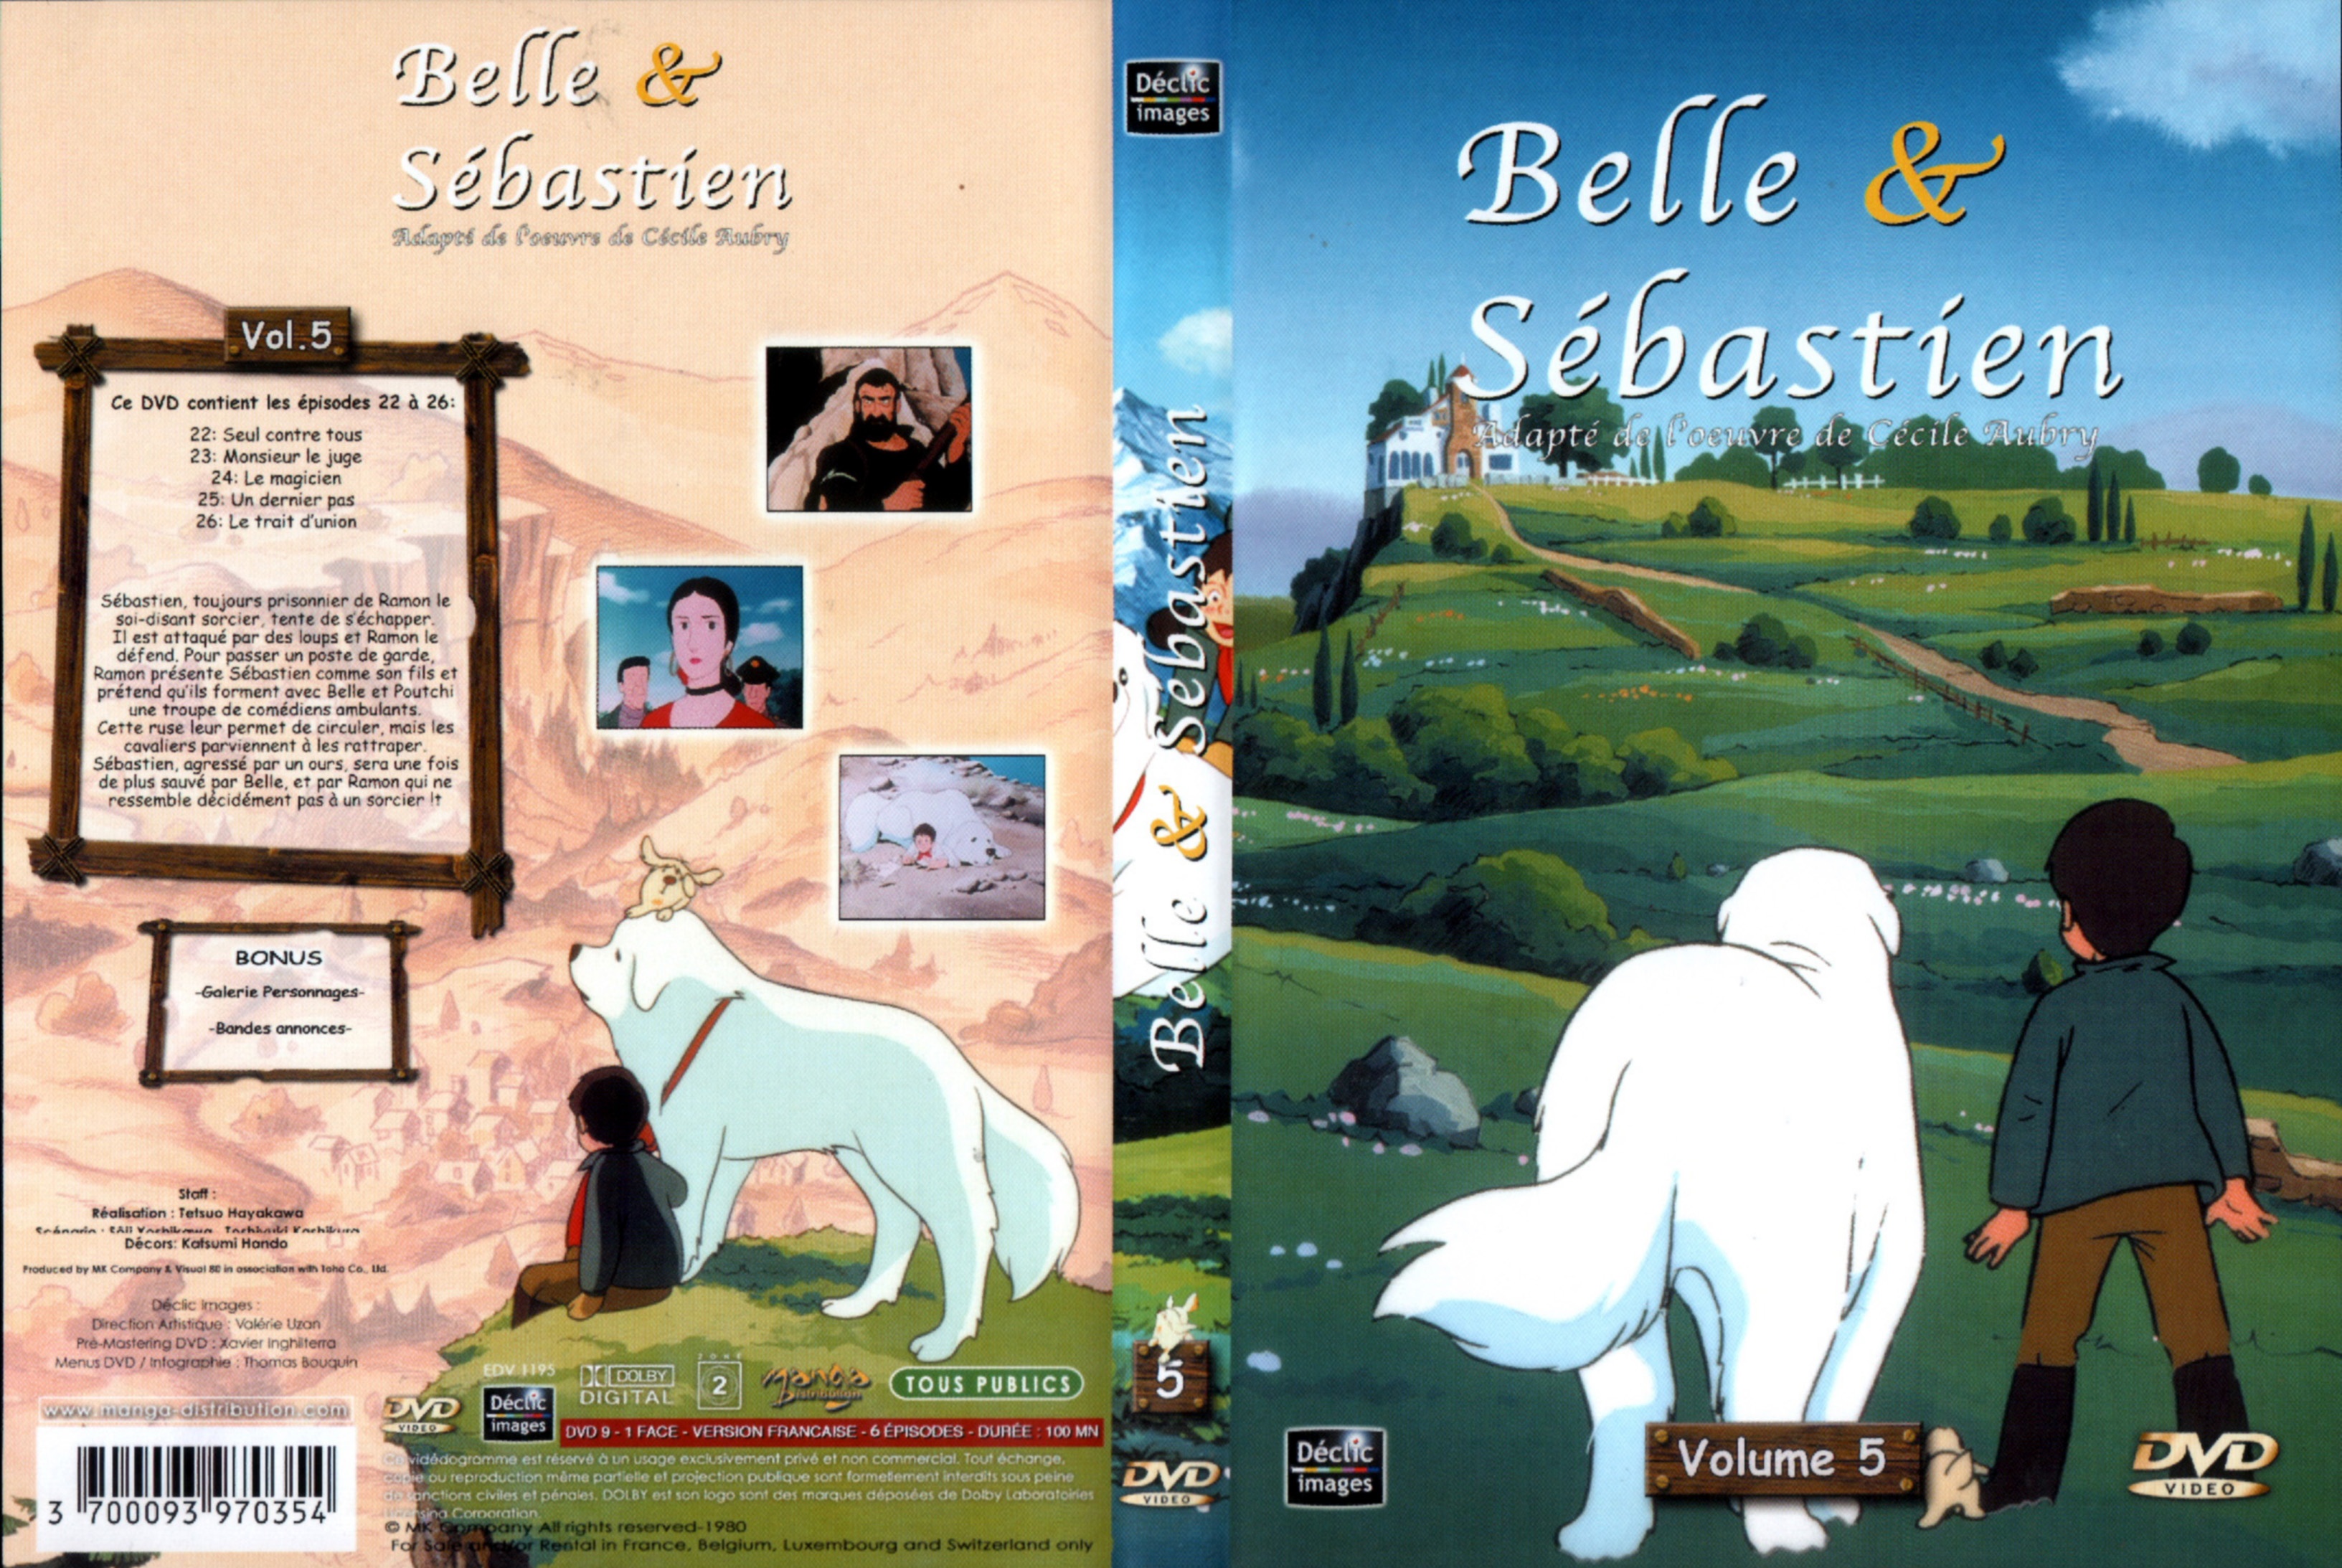 Jaquette DVD Belle et Sebastien DVD 05